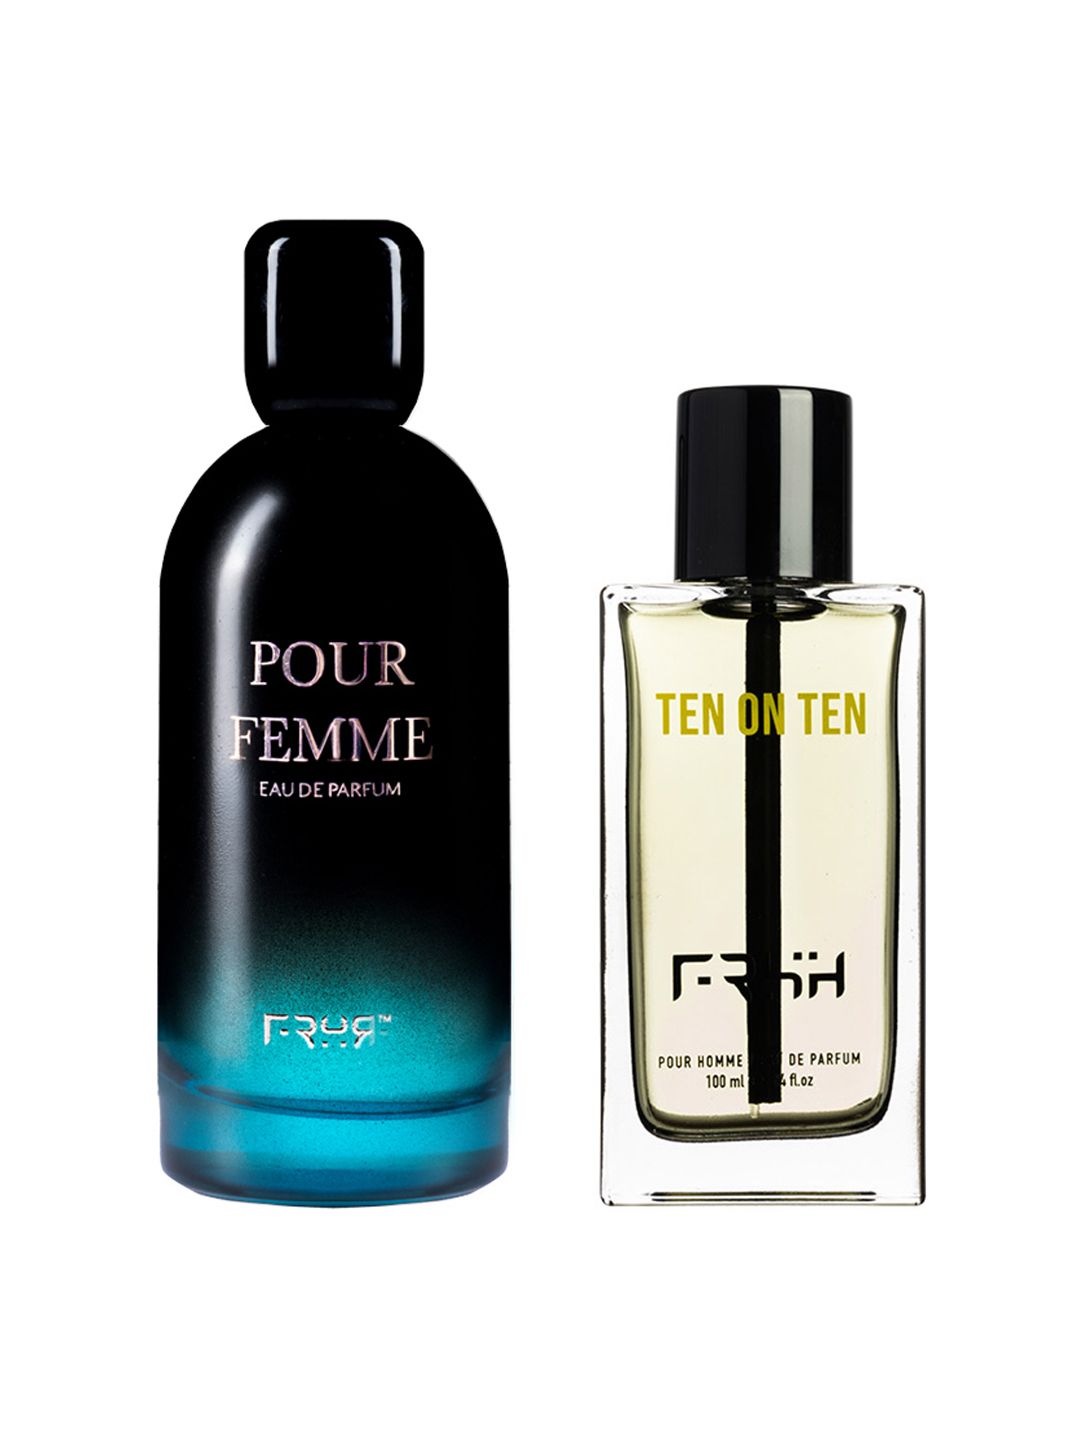 FRSH Set of Men Ten on Ten Pour Homme 100 ml & Women Pour Femme Eau de Parfum 110 ml Price in India